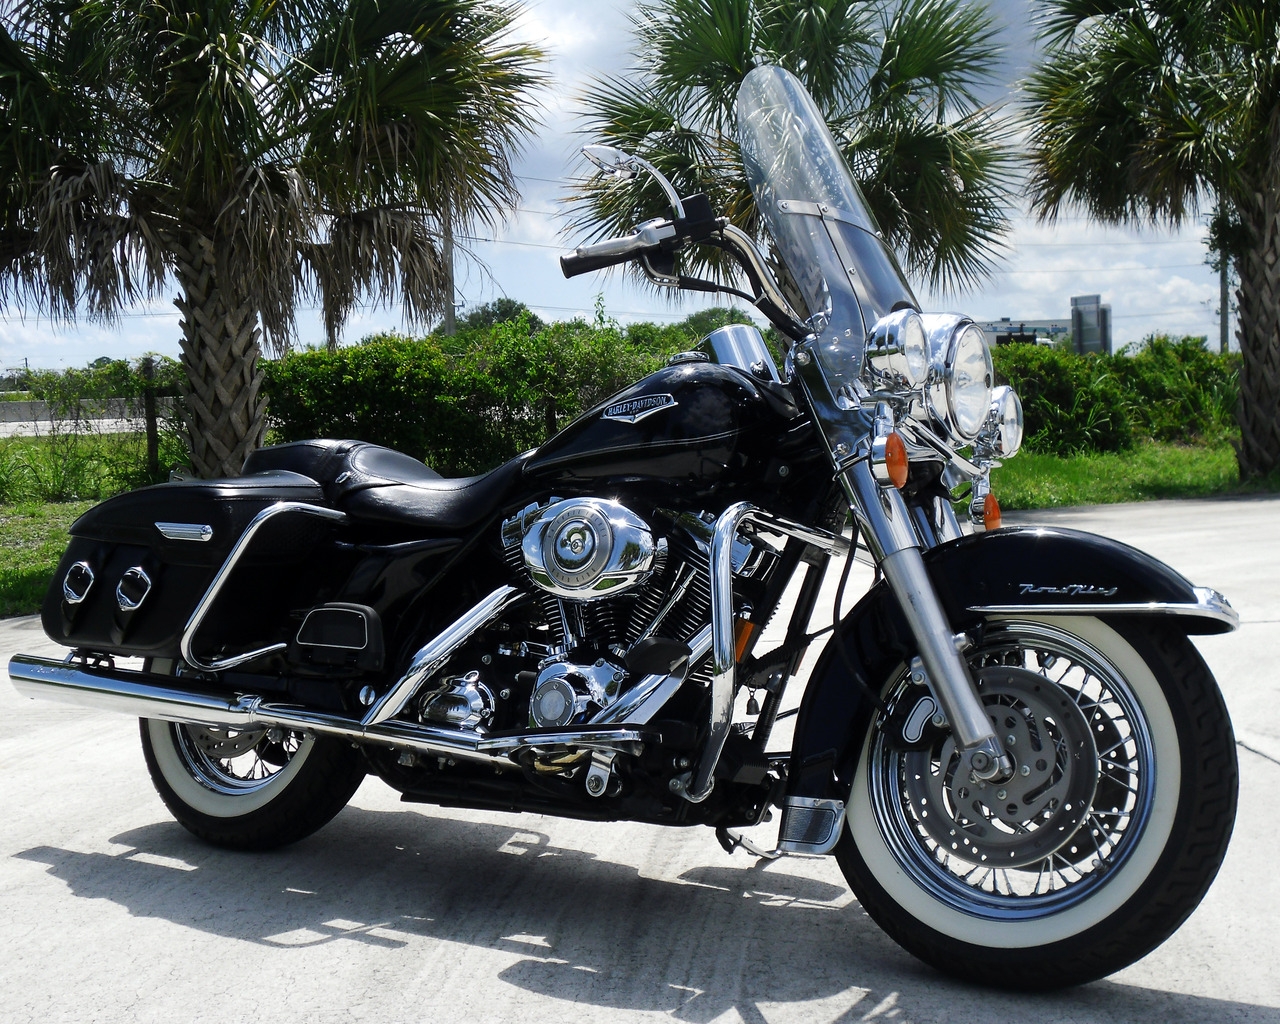 Black Harley Davidson Road King for 1280 x 1024 resolution